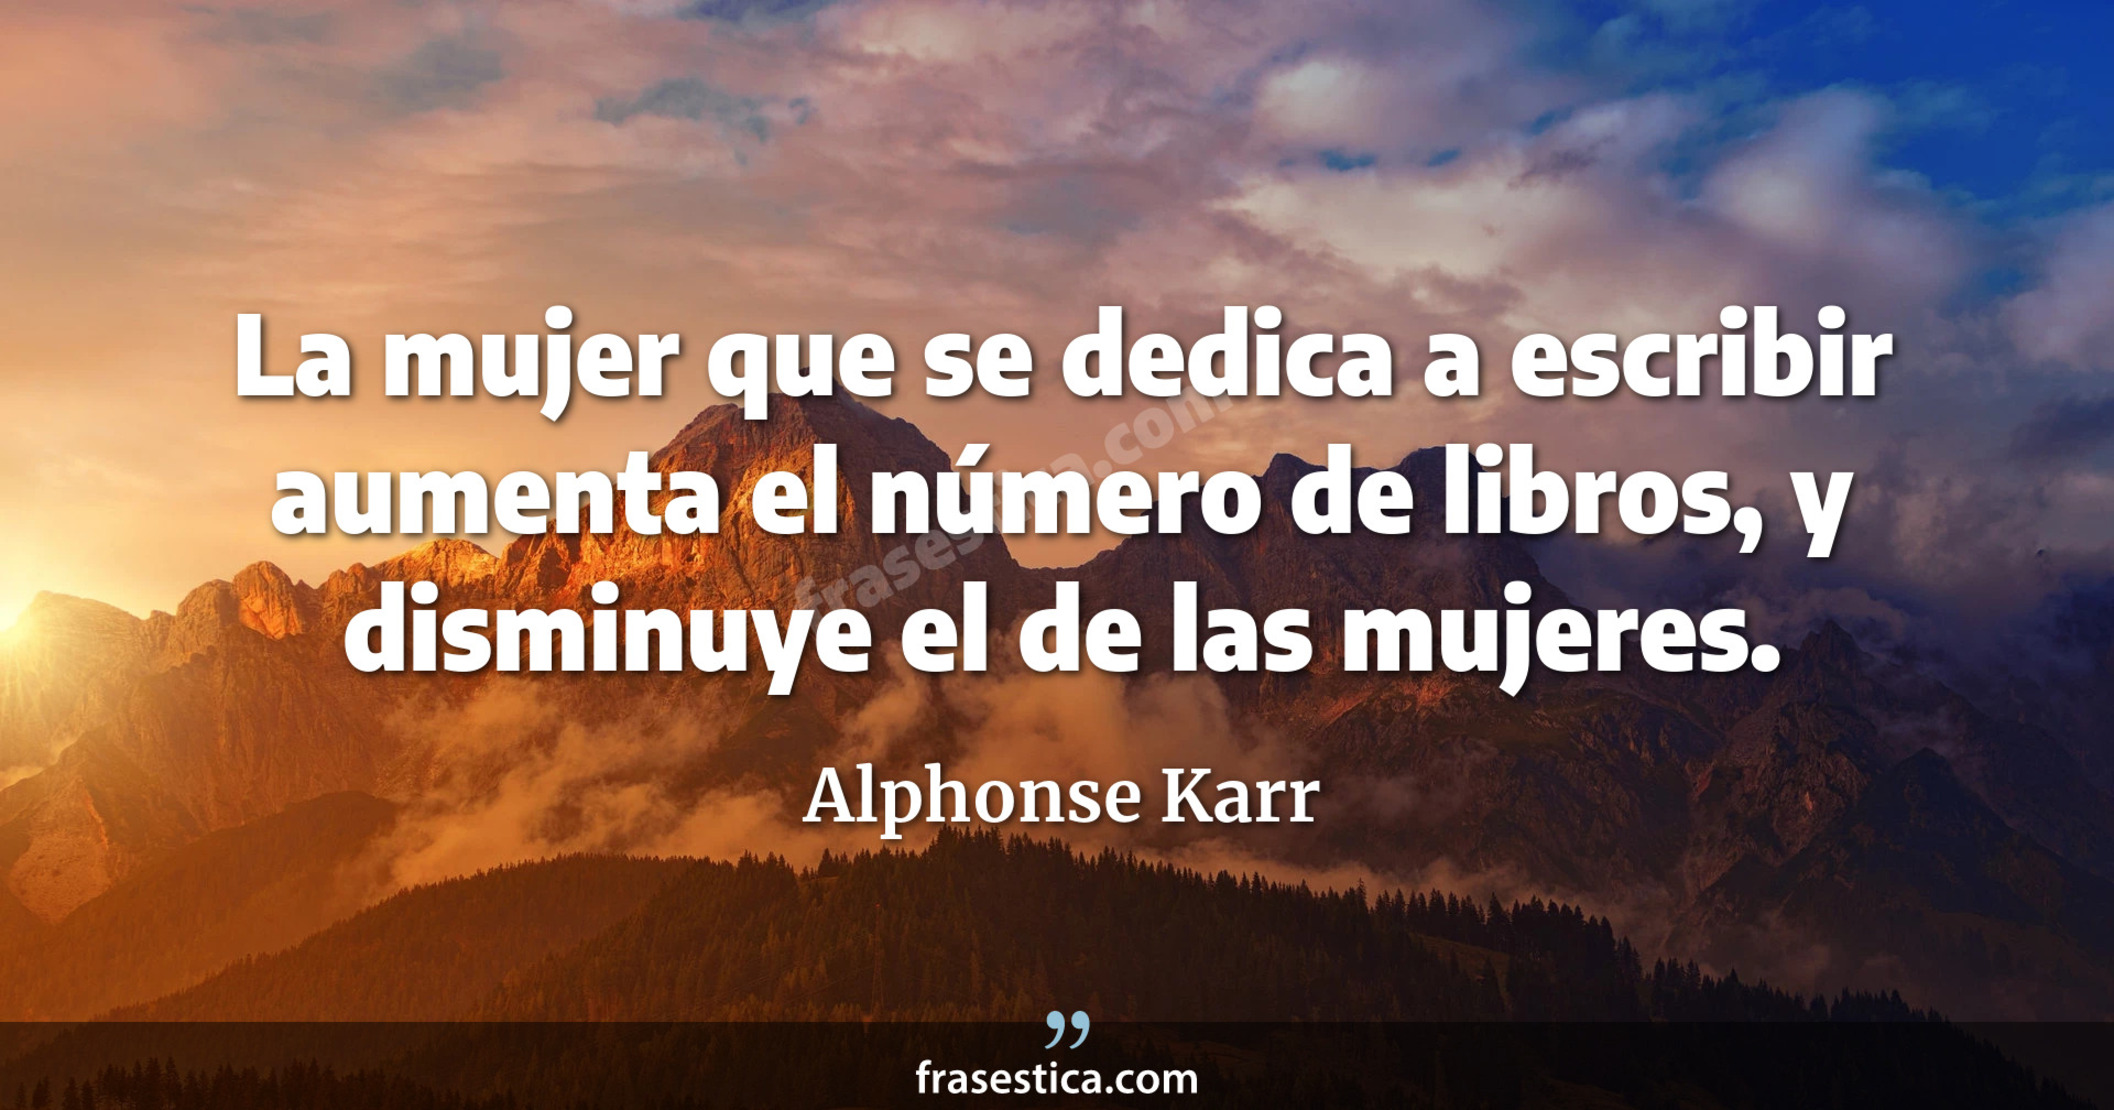 La mujer que se dedica a escribir aumenta el número de libros, y disminuye el de las mujeres. - Alphonse Karr